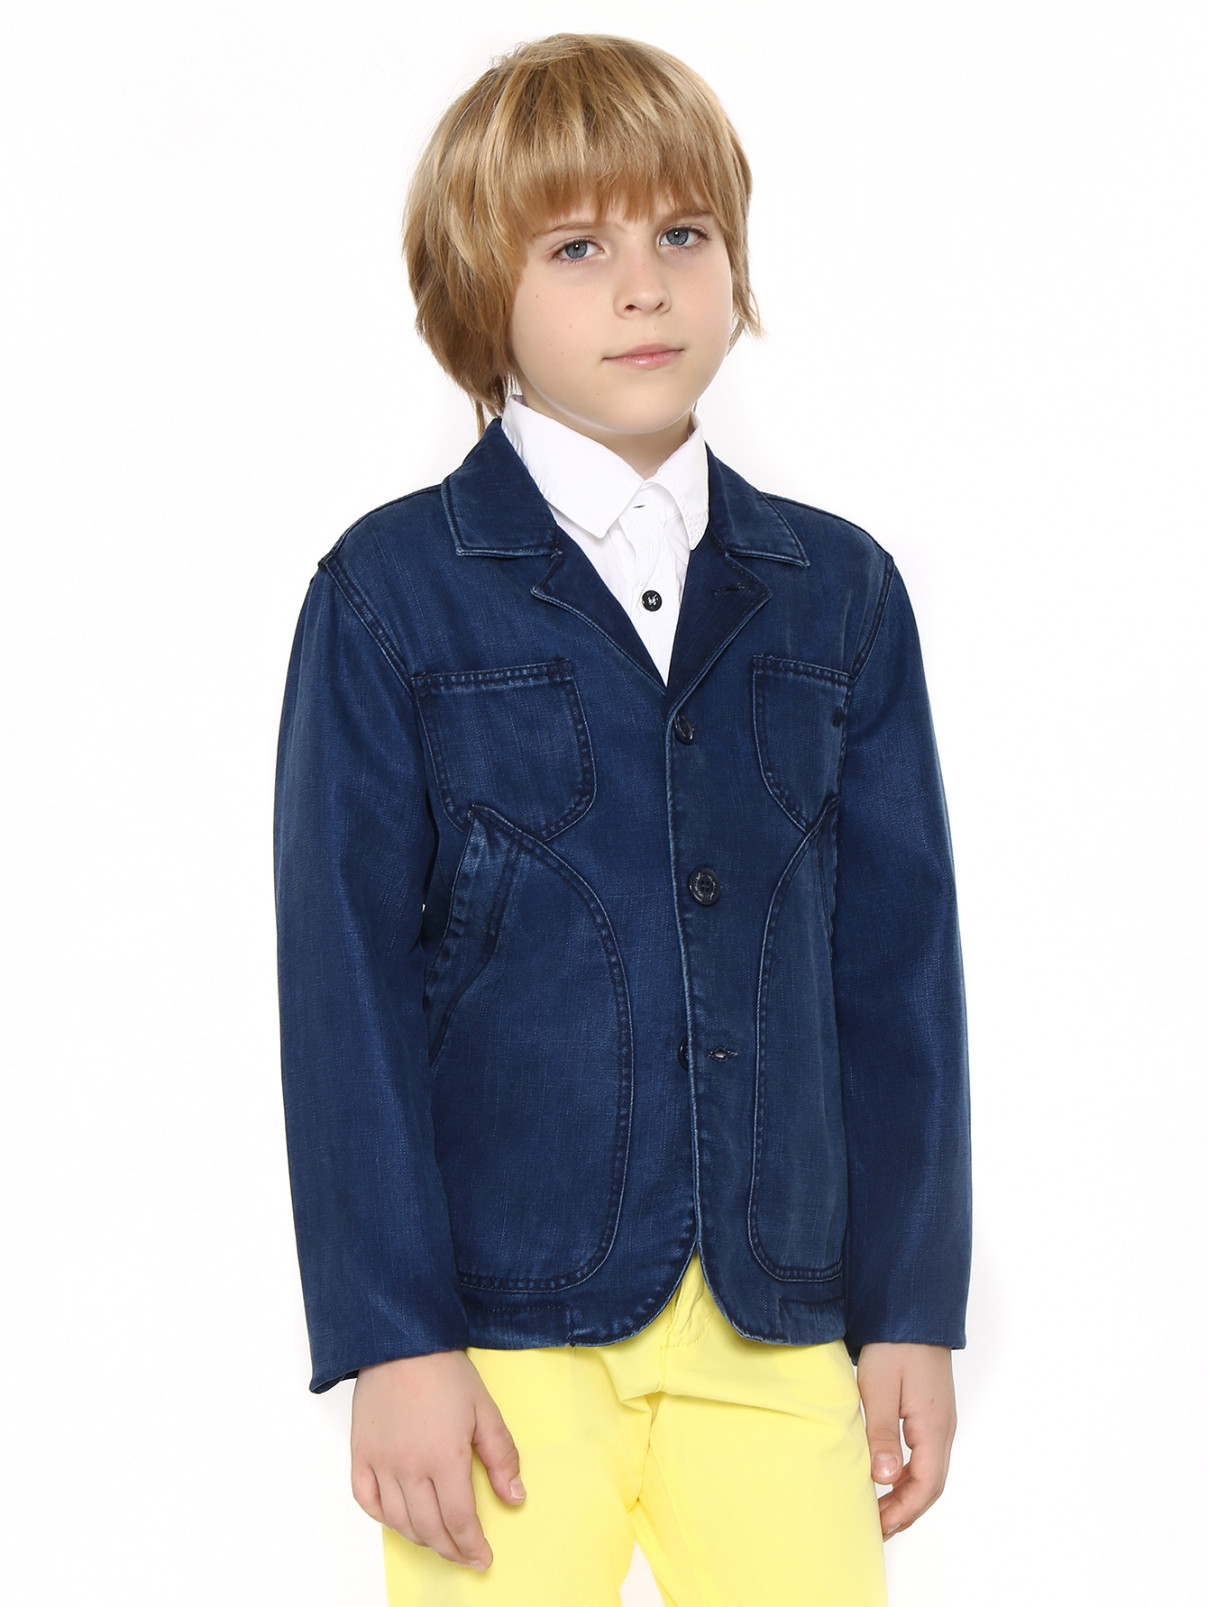 Пиджак из денима с накладными карманами MiMiSol  –  Модель Общий вид  – Цвет:  Синий